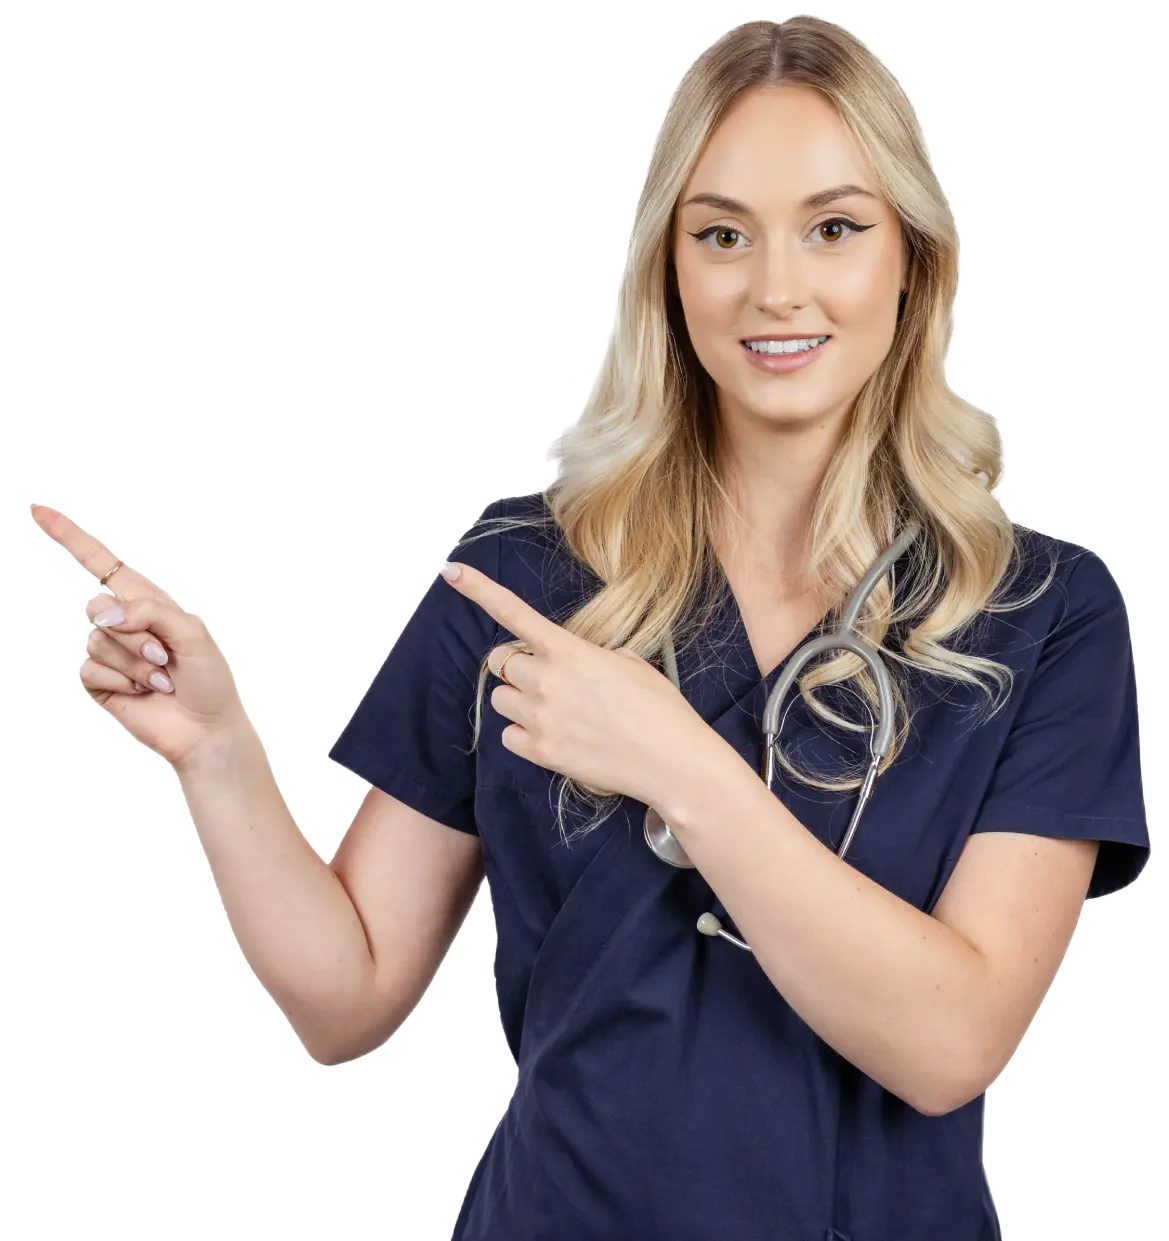 Uśmiechnięta pielęgniarka z blond włosami w granatowym ubraniu medycznym i ze stetoskopem, która wskazuje palcami na profesjonalne usługi Ośrodka Zdrowia w Turośni Kościelnej